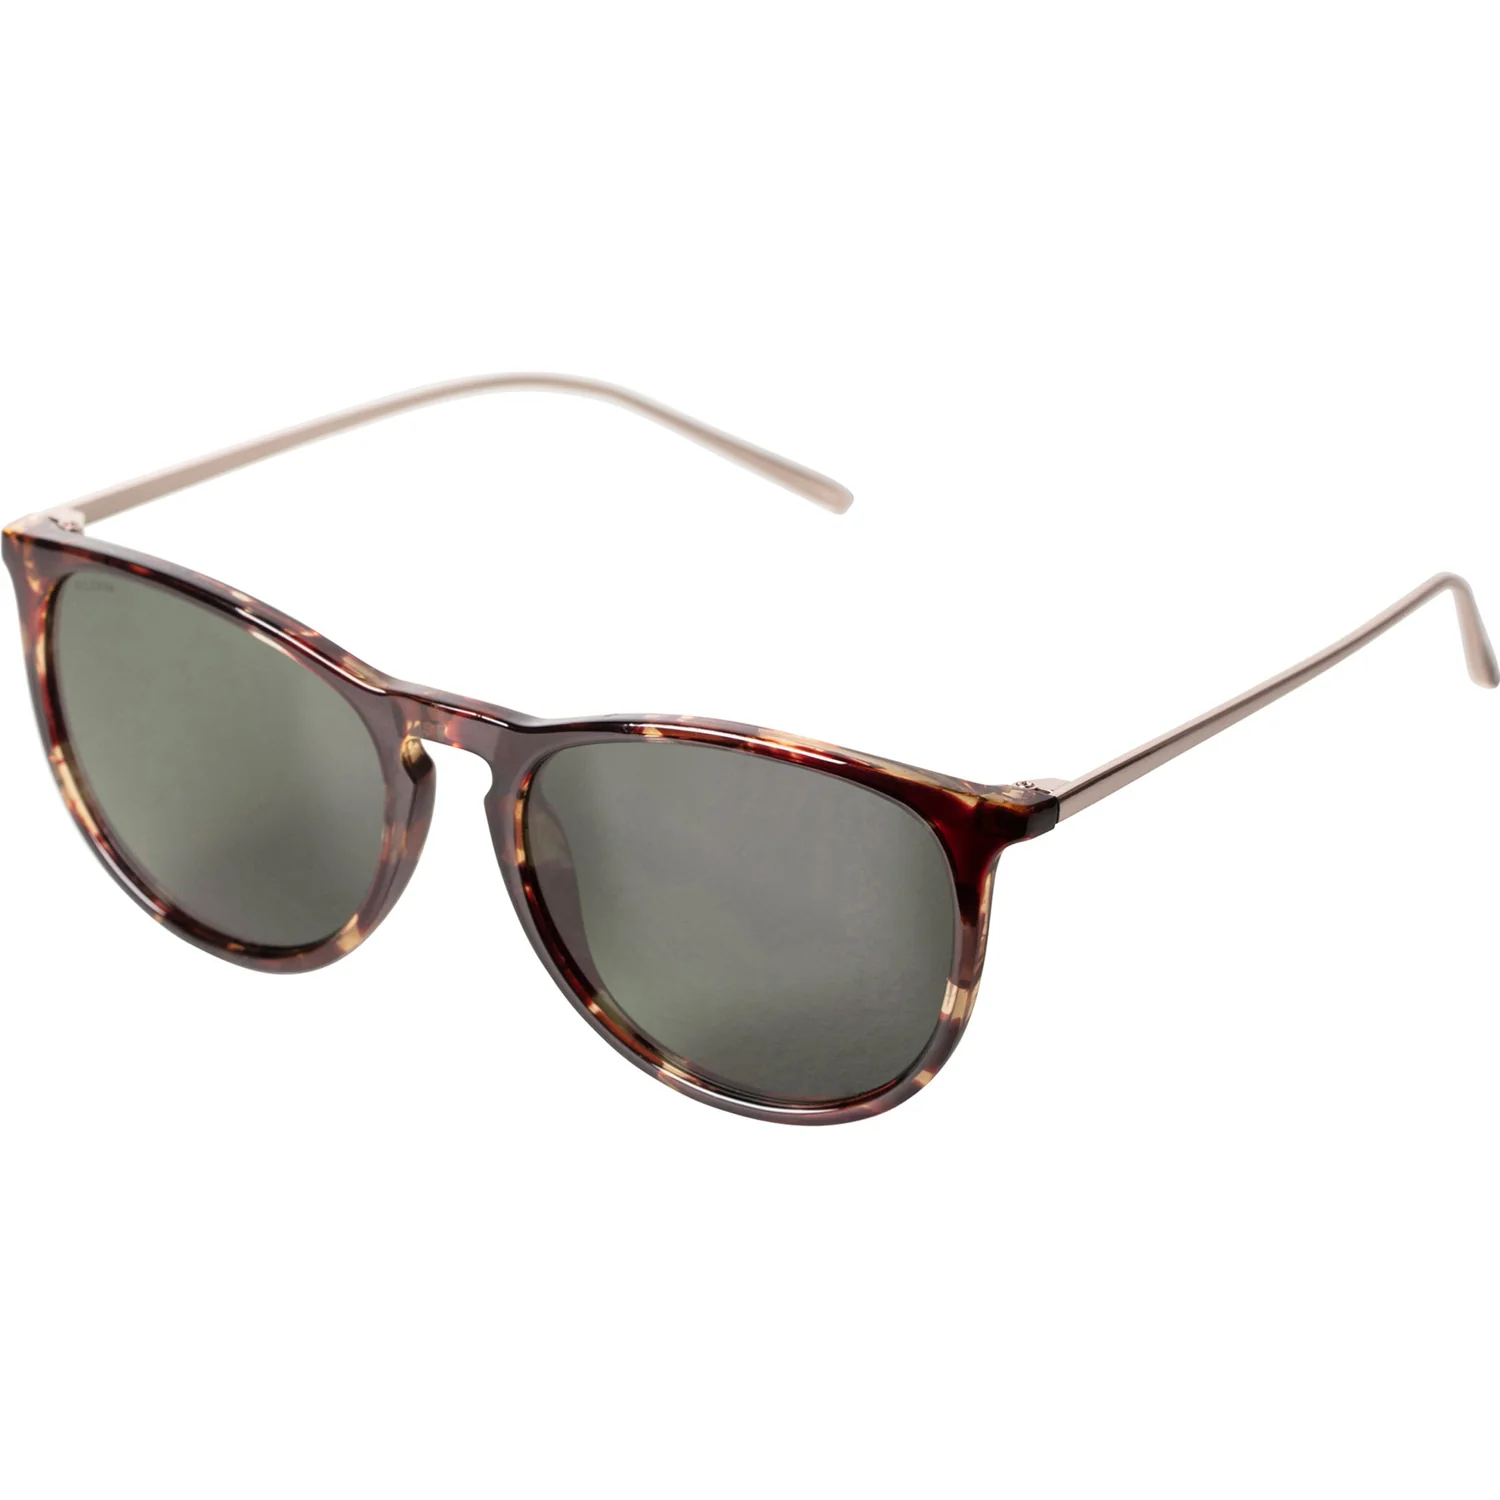 Pilgrim Vanille Sunglasses - Tortoise/Gold Accessories - Other Accessories - Sunglasses by Pilgrim | Grace the Boutique